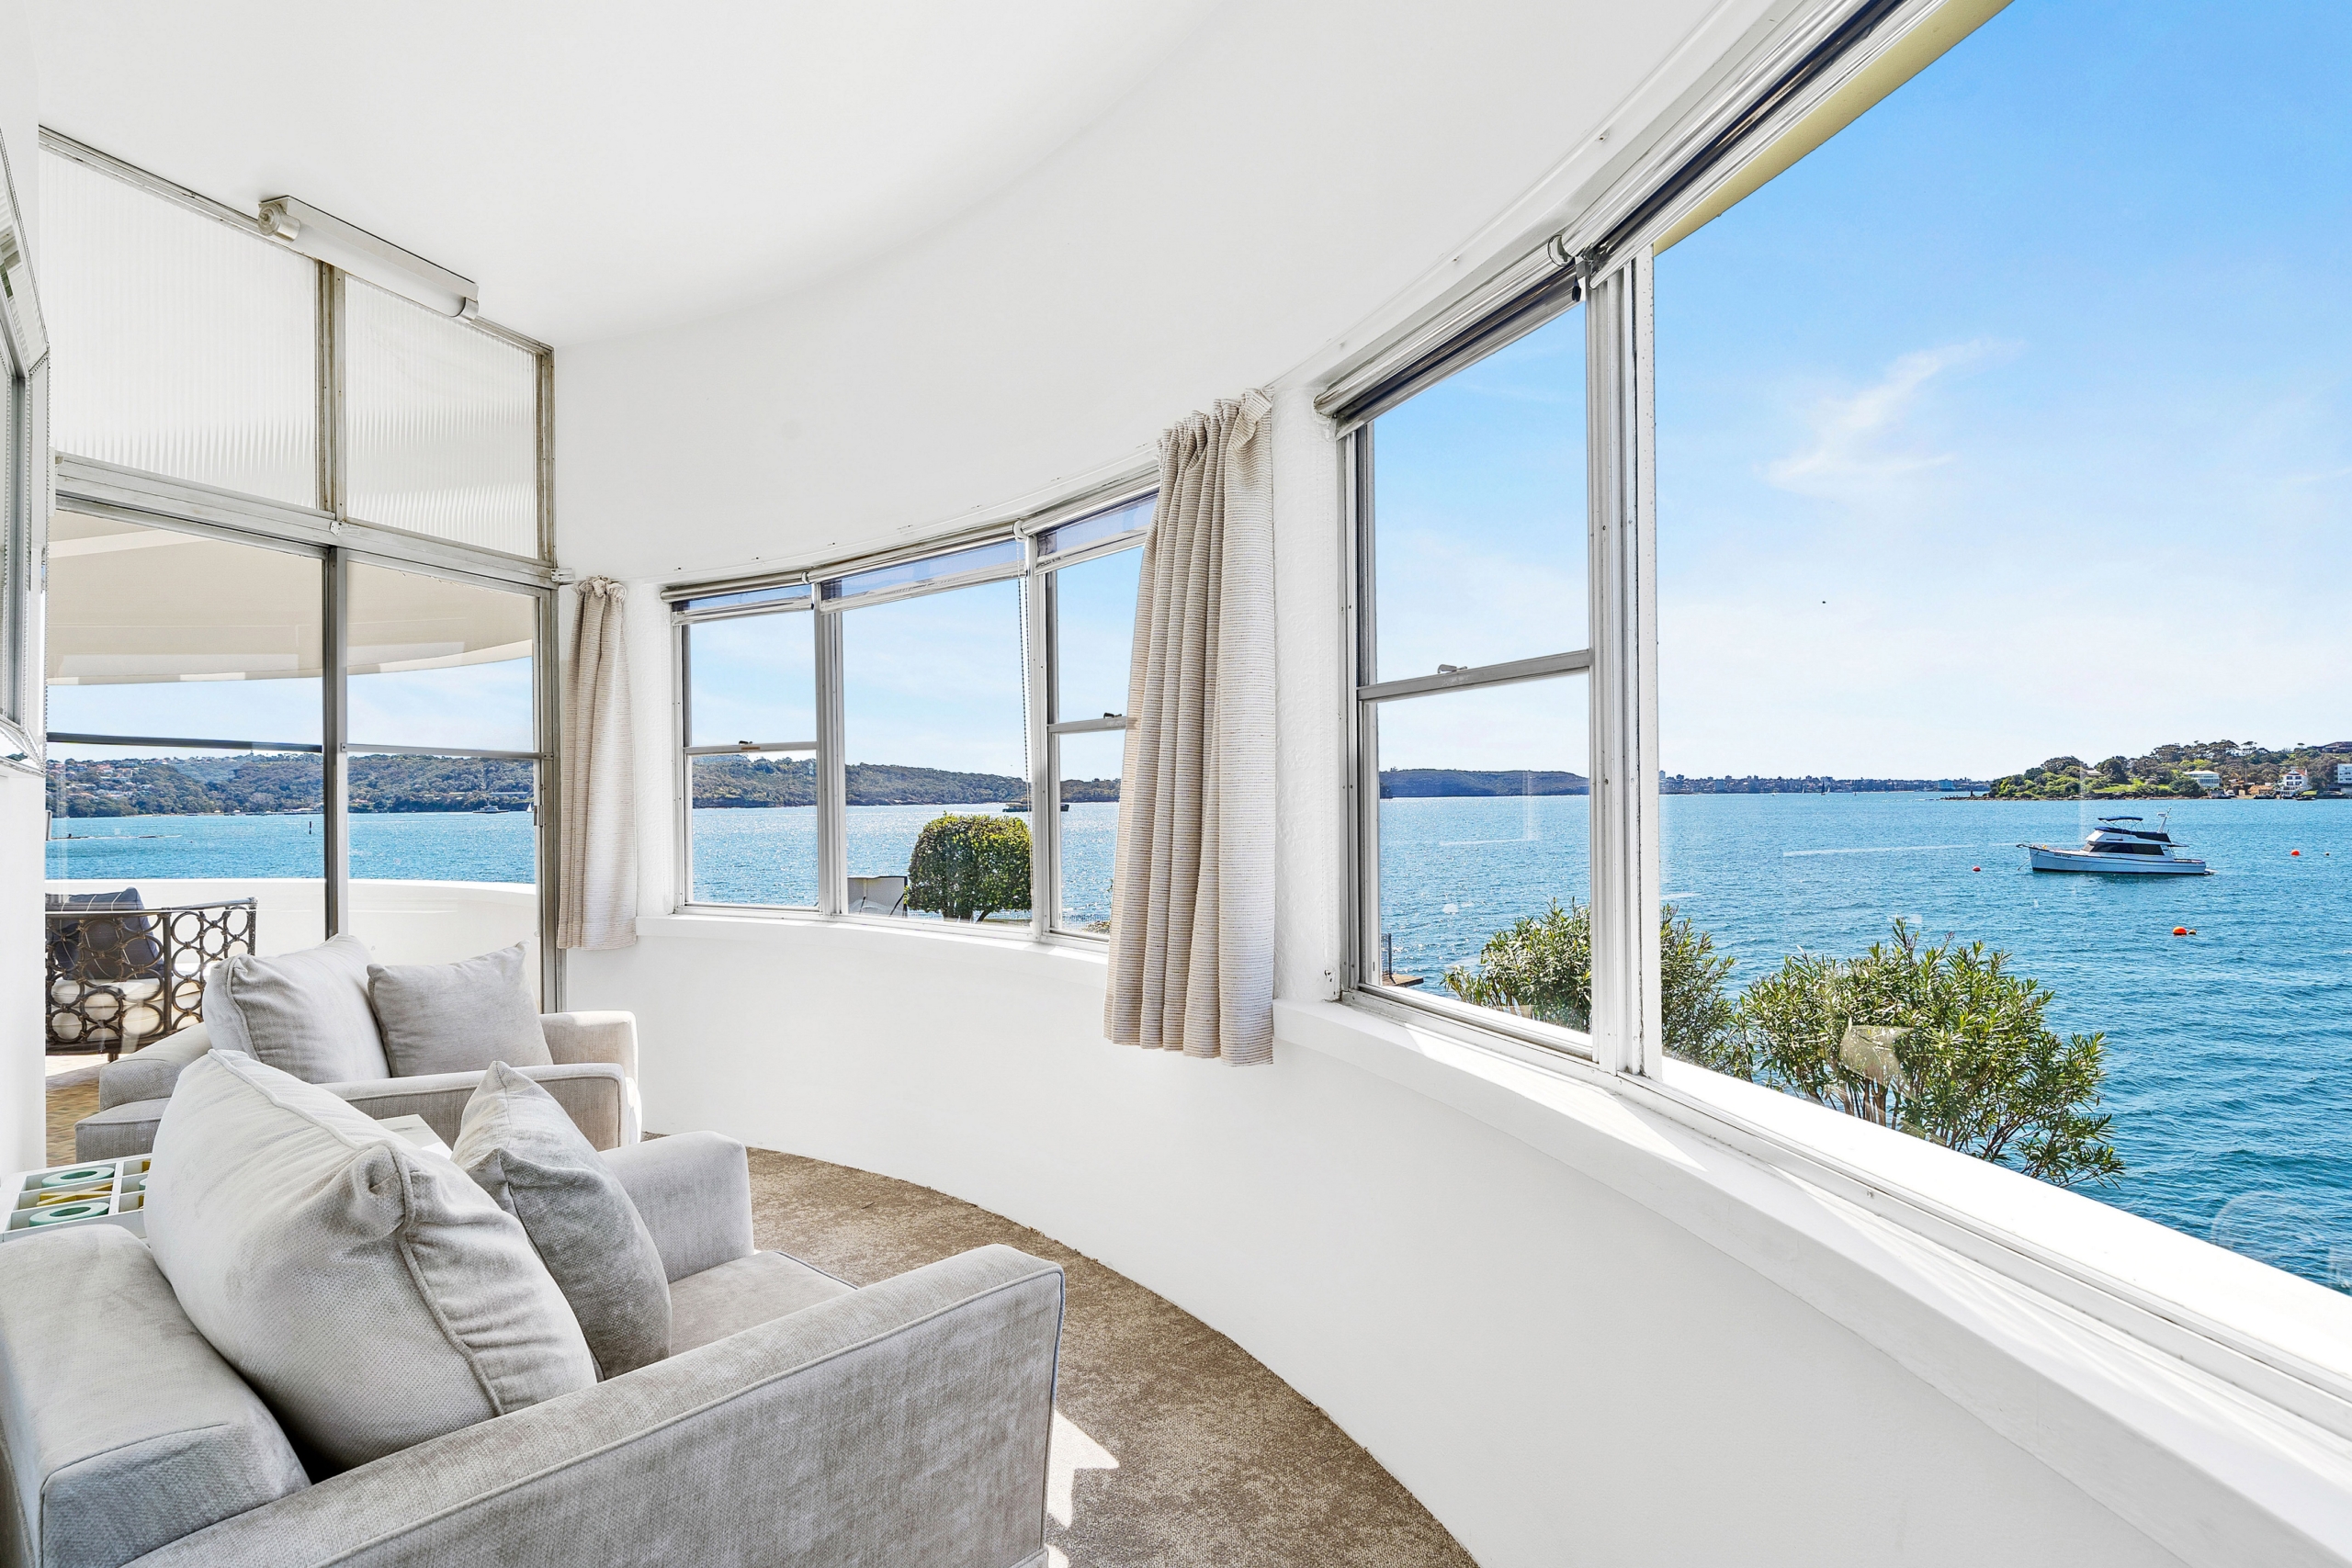 Các khu vực chung trong ngôi nhà này sử dụng rộng rãi các cửa sổ lớn để đón ánh sáng tự nhiên đồng thời mang đến cho các chủ nhân một tầm nhìn tuyệt vời. (Ảnh: Đăng dưới sự cho phép của công ty Sydney Sotheby’s International Realty)